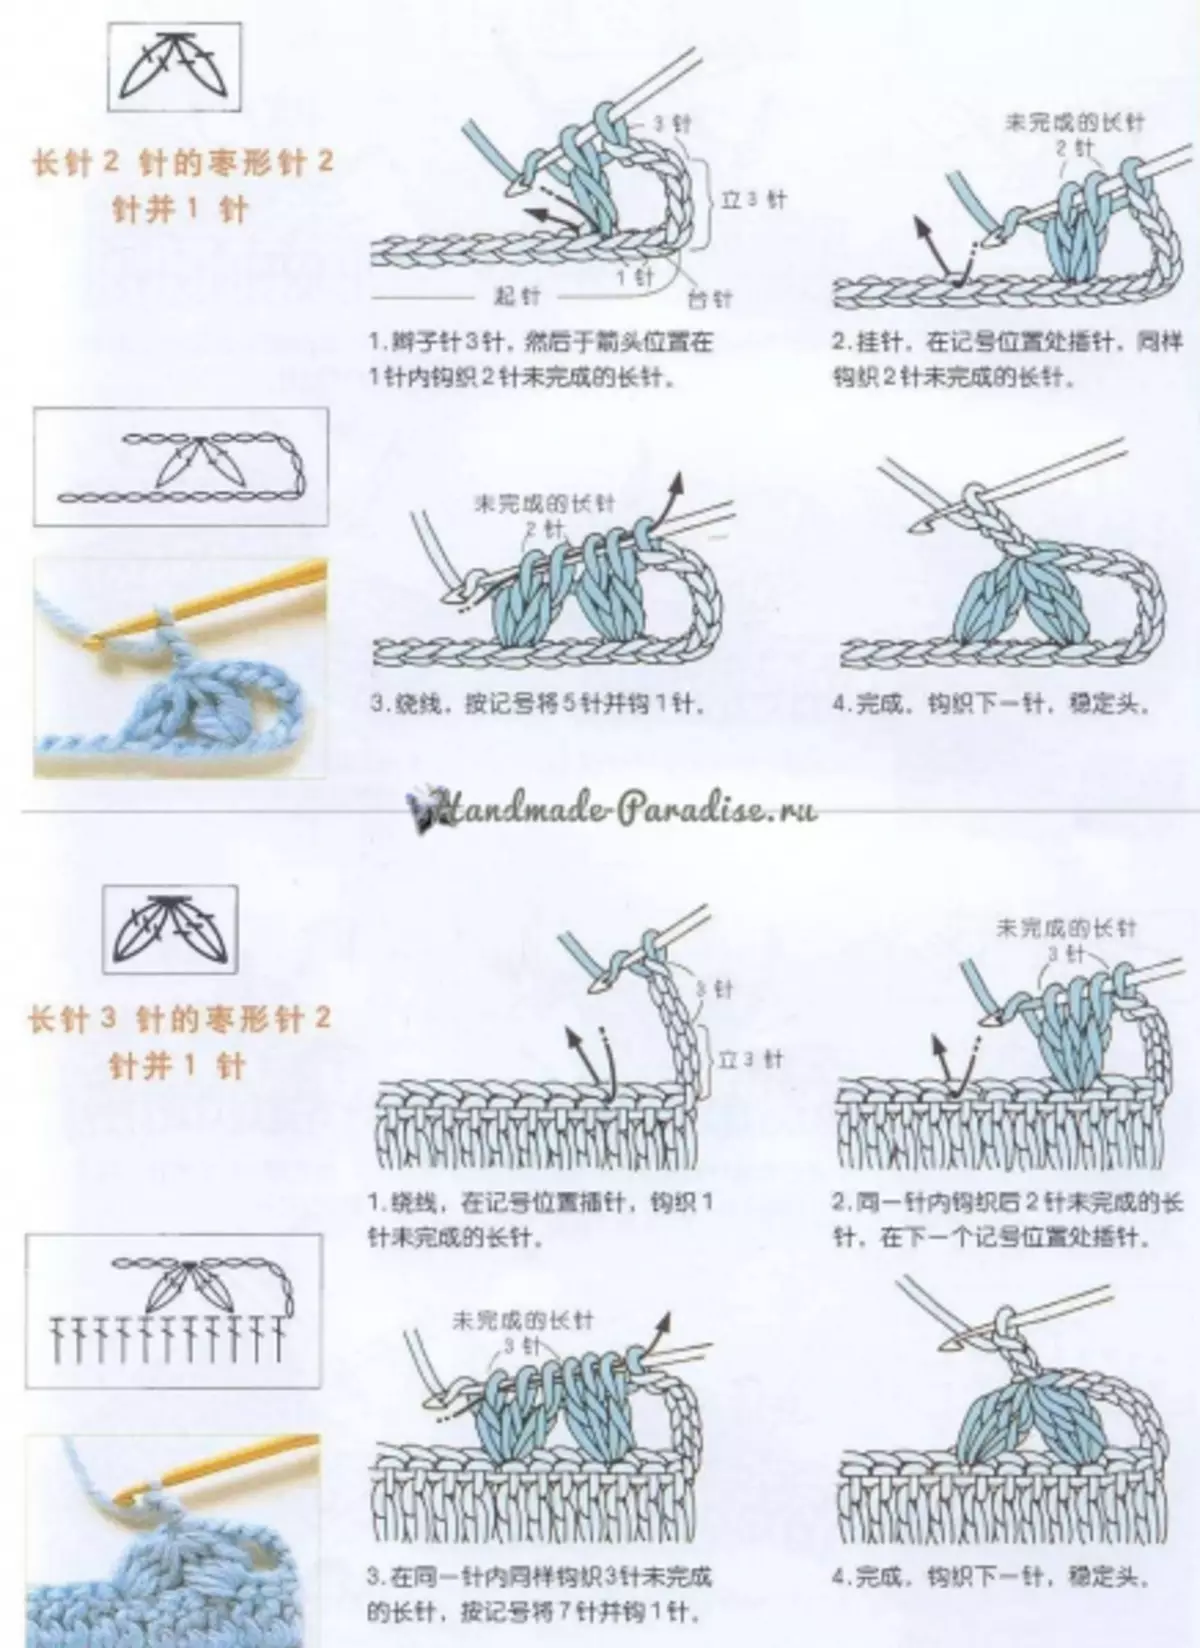 Como fazer crochê em esquemas chineses